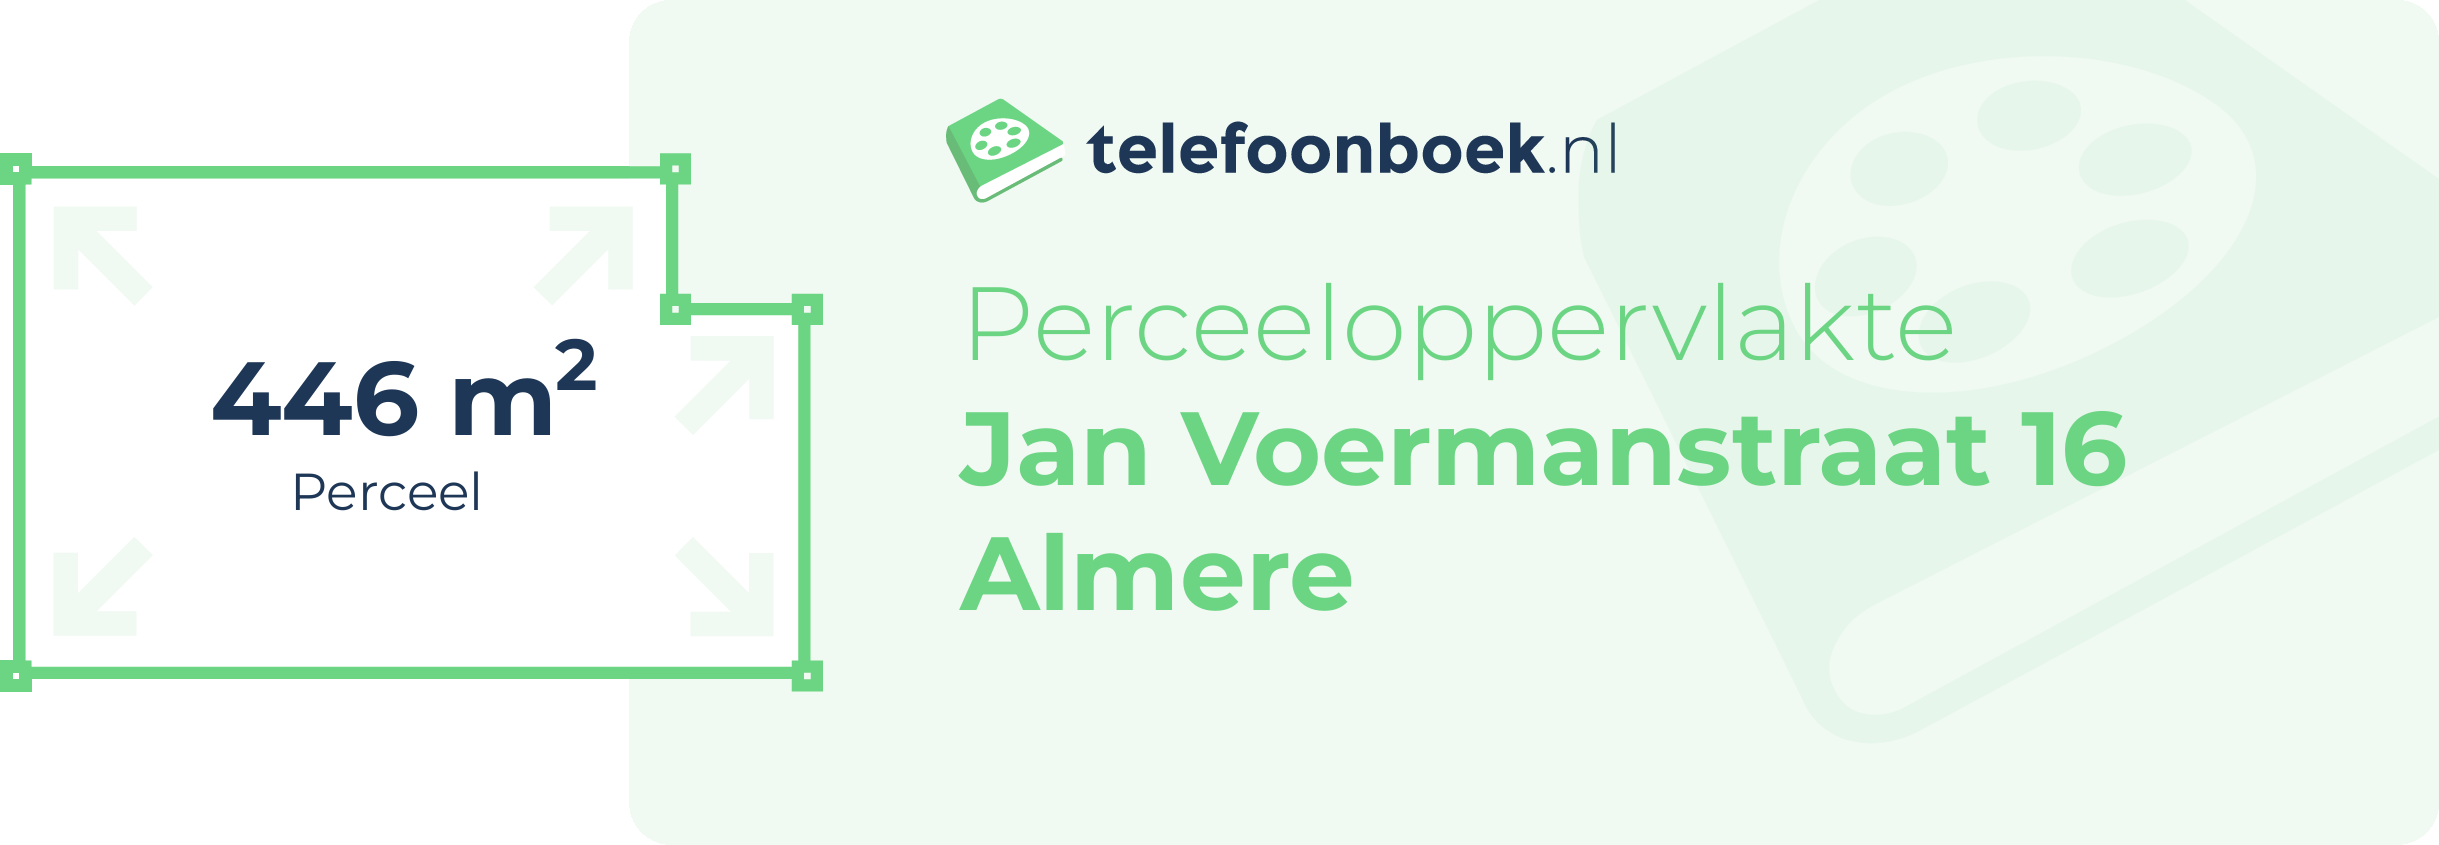 Perceeloppervlakte Jan Voermanstraat 16 Almere